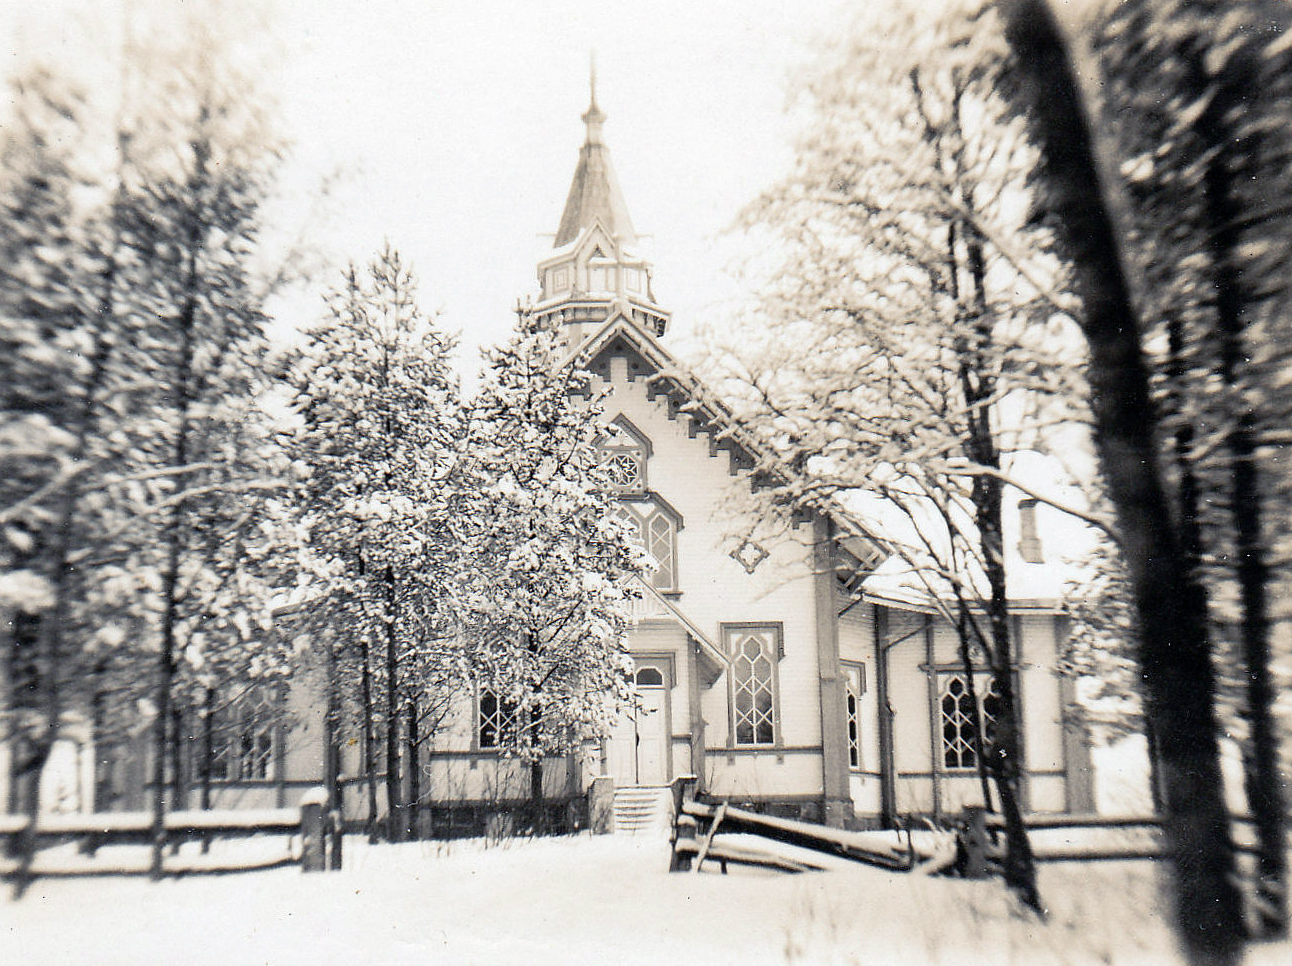 Late 1930's. Lutheran church